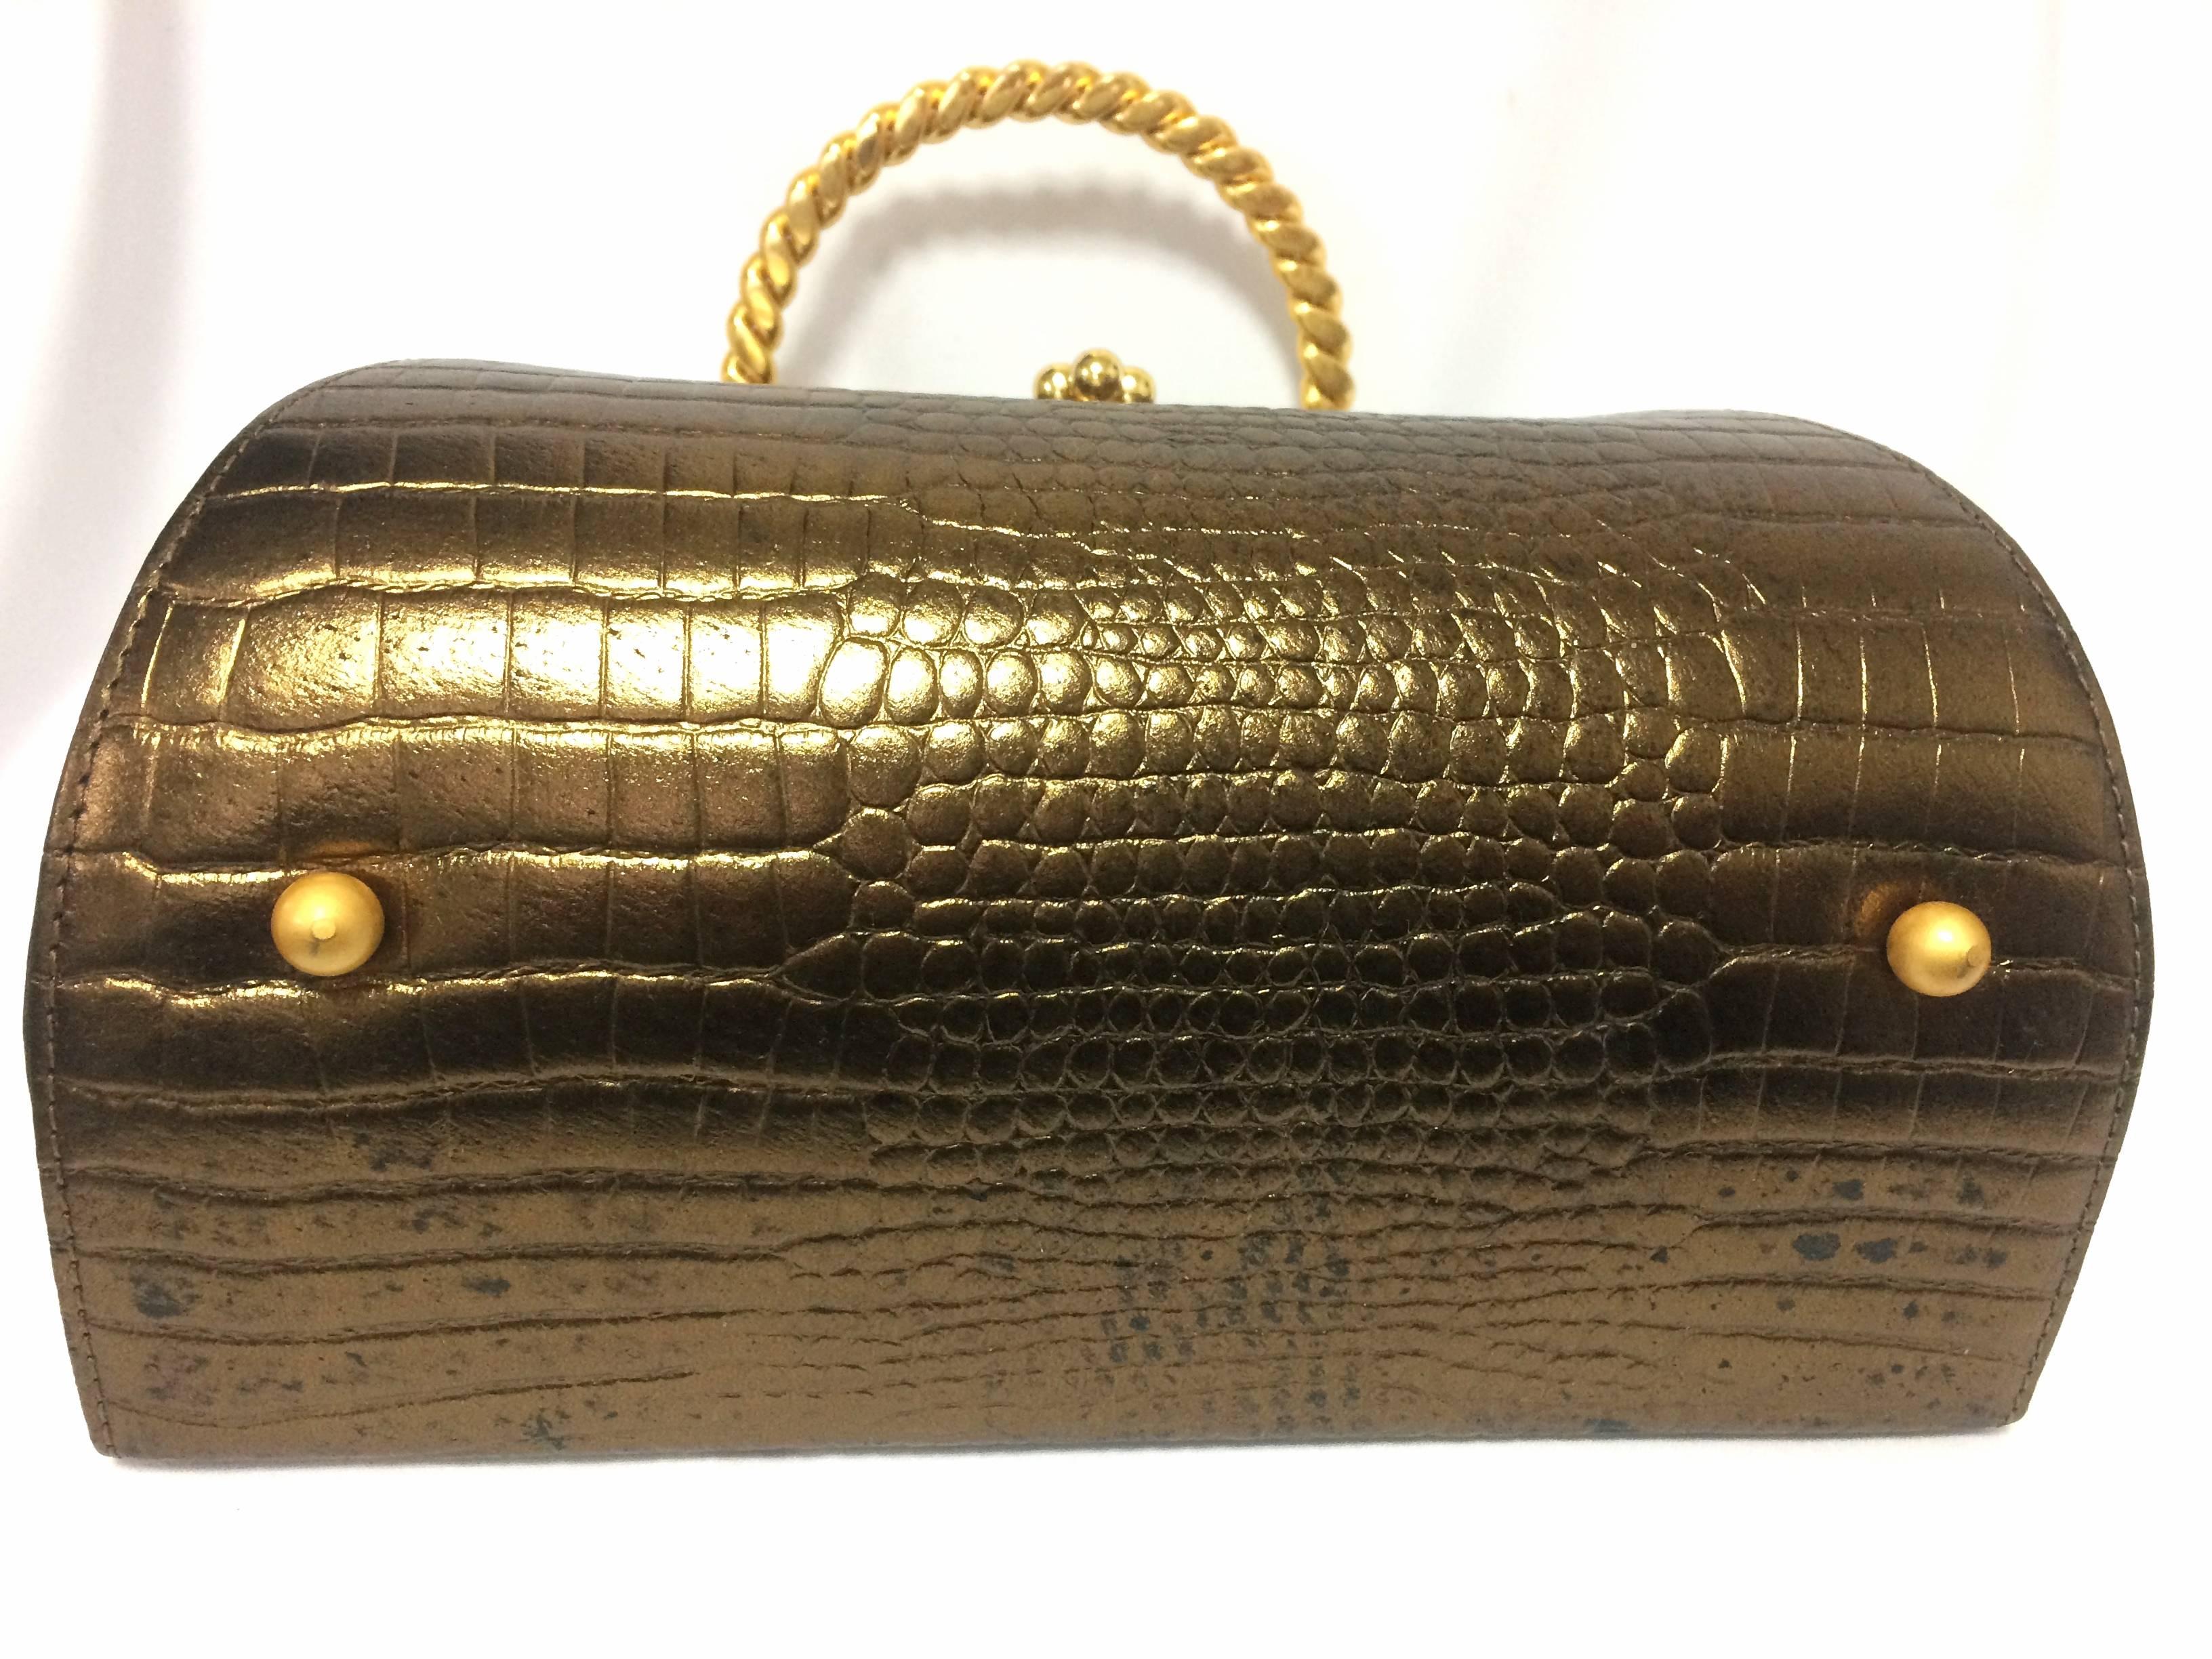 Vintage Charles Jourdan bronze gold croc embossed leather vanity bag. 2